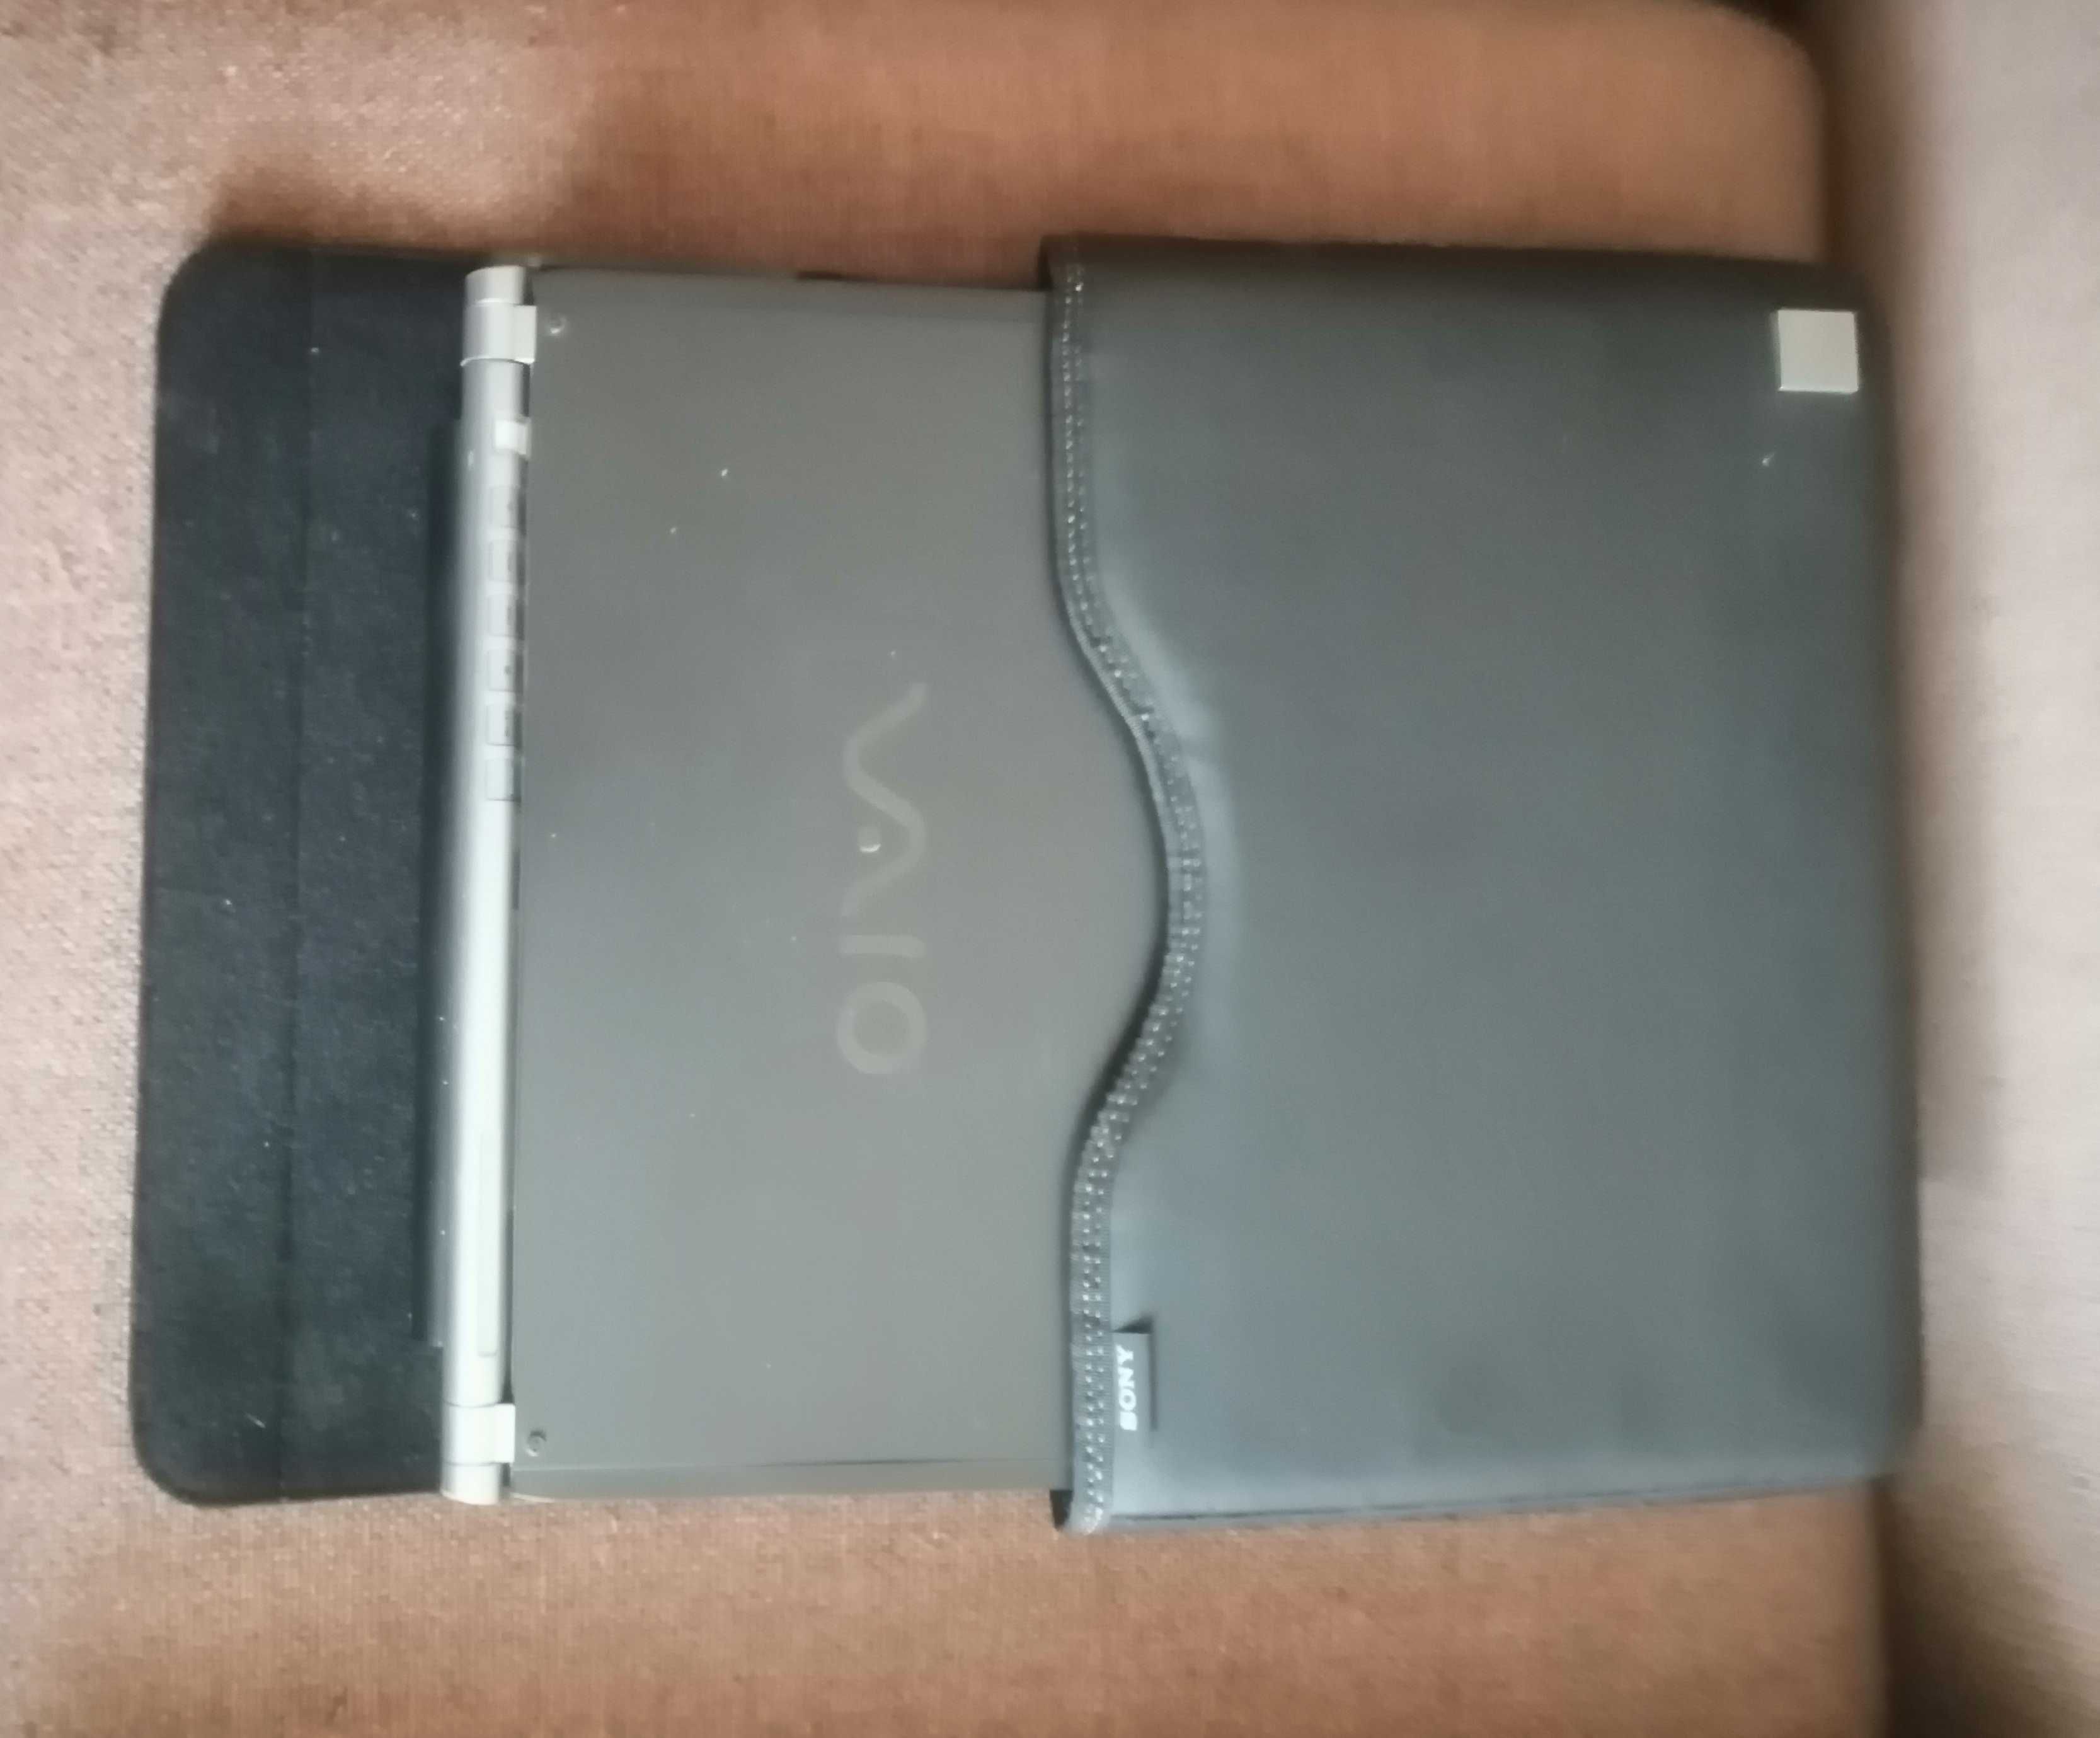 Sony Vaio VGN-PCG 4J1L- ультрапортативний ноутбук 11,1 дюйма